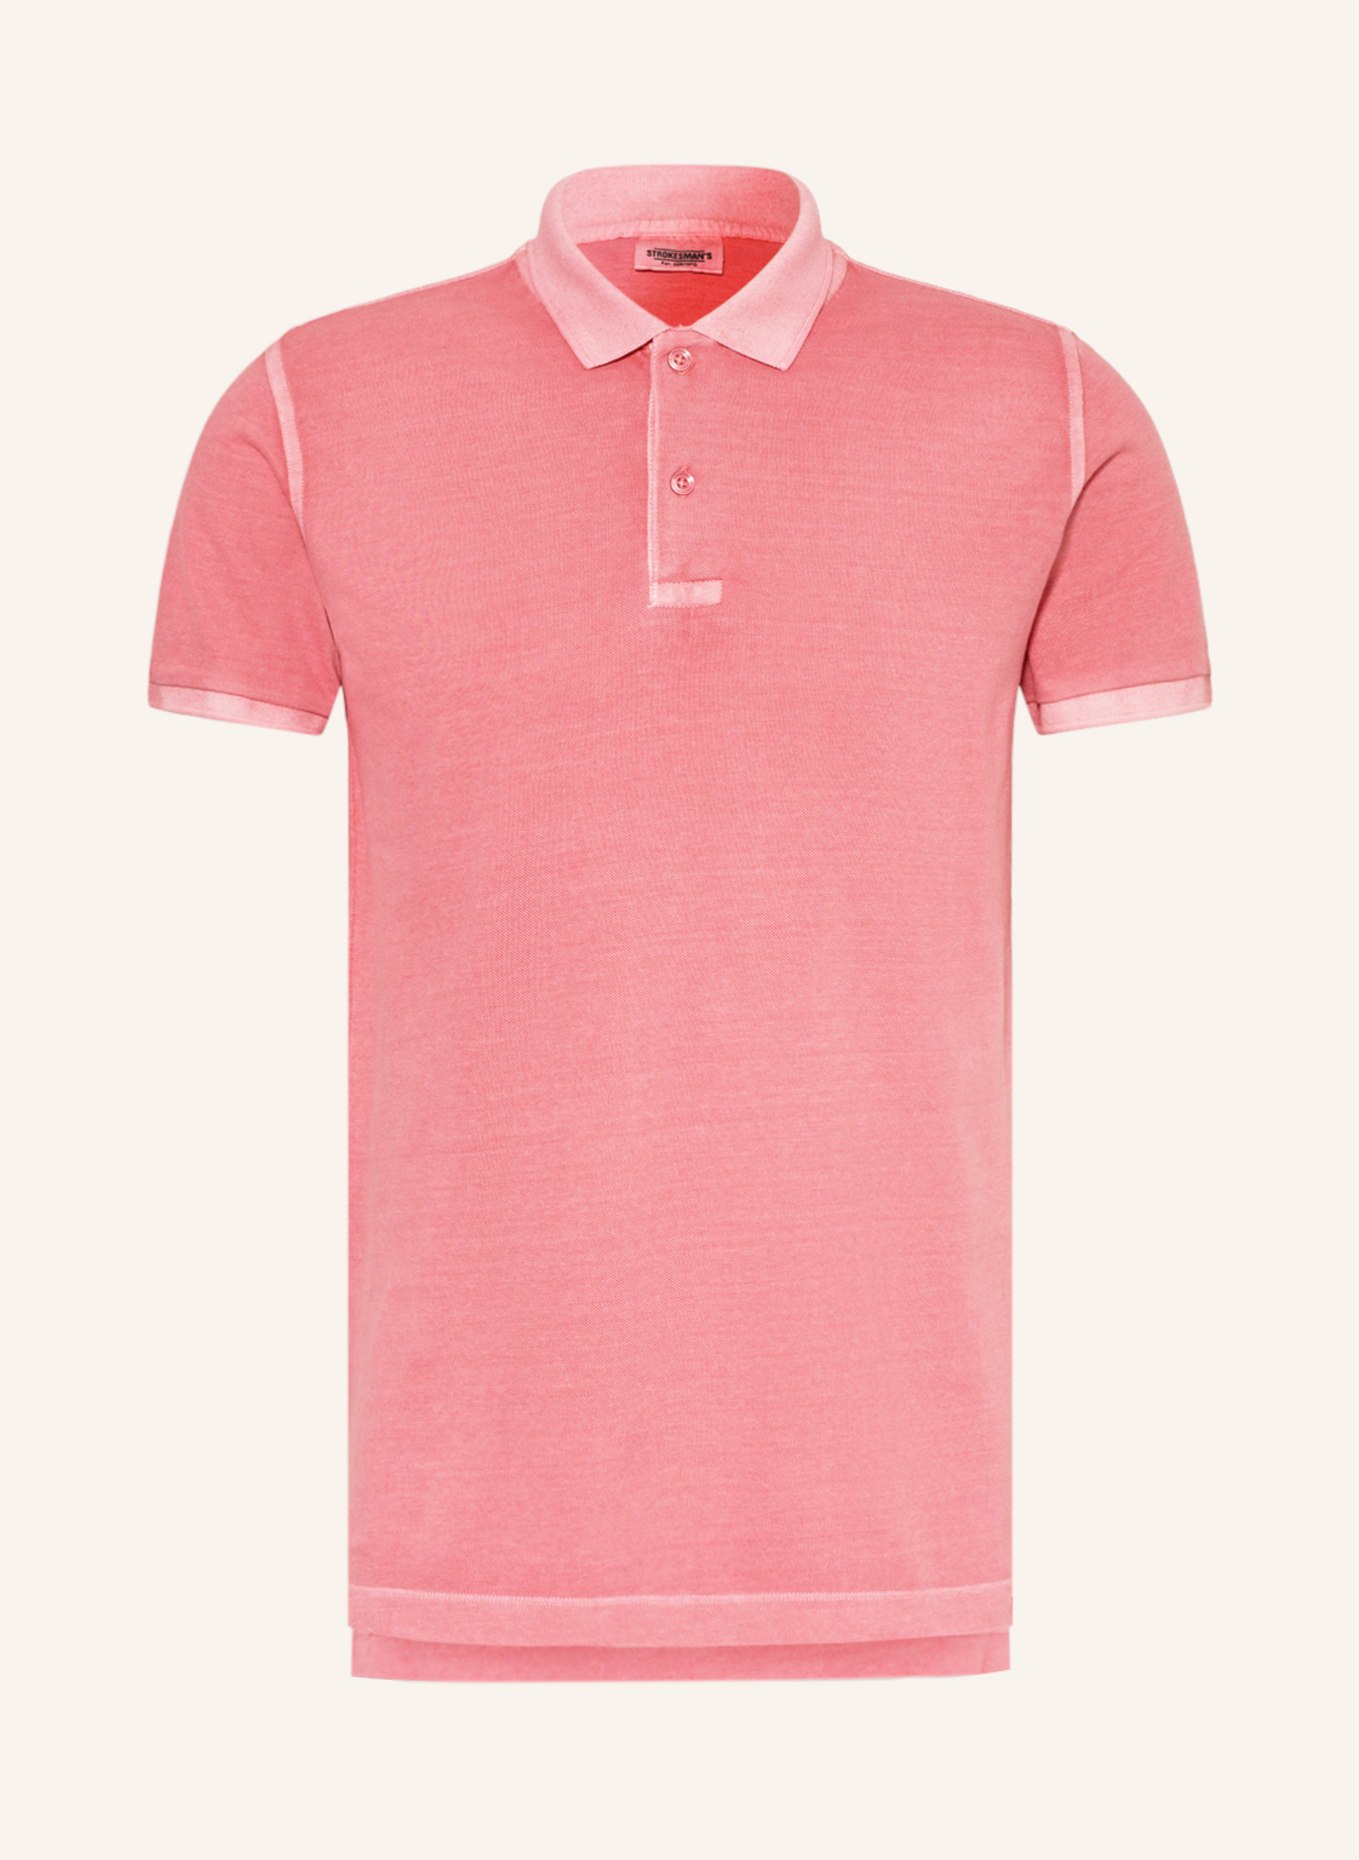 STROKESMAN'S Piqué-Poloshirt, Farbe: ROSA (Bild 1)